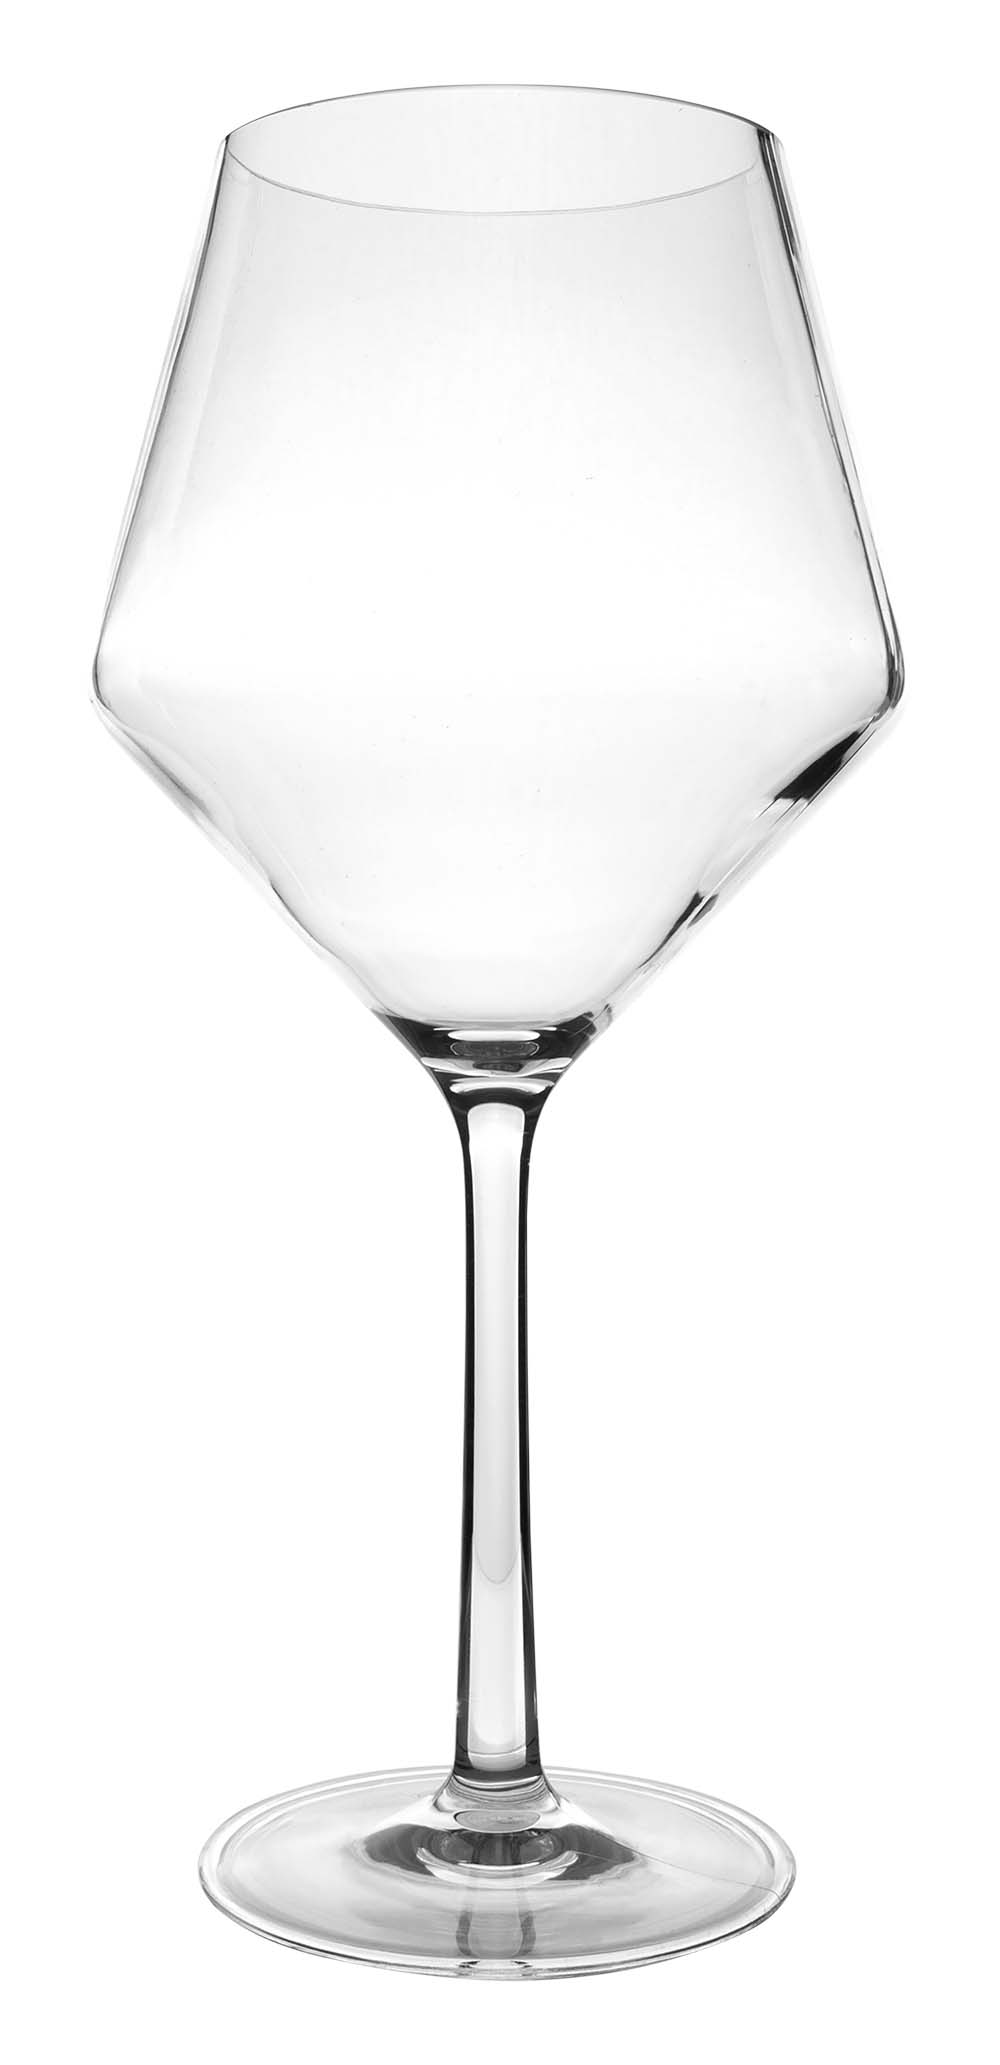 6101468 Een vrijwel onbreekbaar luxe rode wijnglas met een recht en stijlvol design. Vaatwasmachinebestendig, lichtgewicht en nog beter krasbestendig. Gemaakt van sterk tritan. Een set van 2 glazen. De glazen zijn BPA vrij.